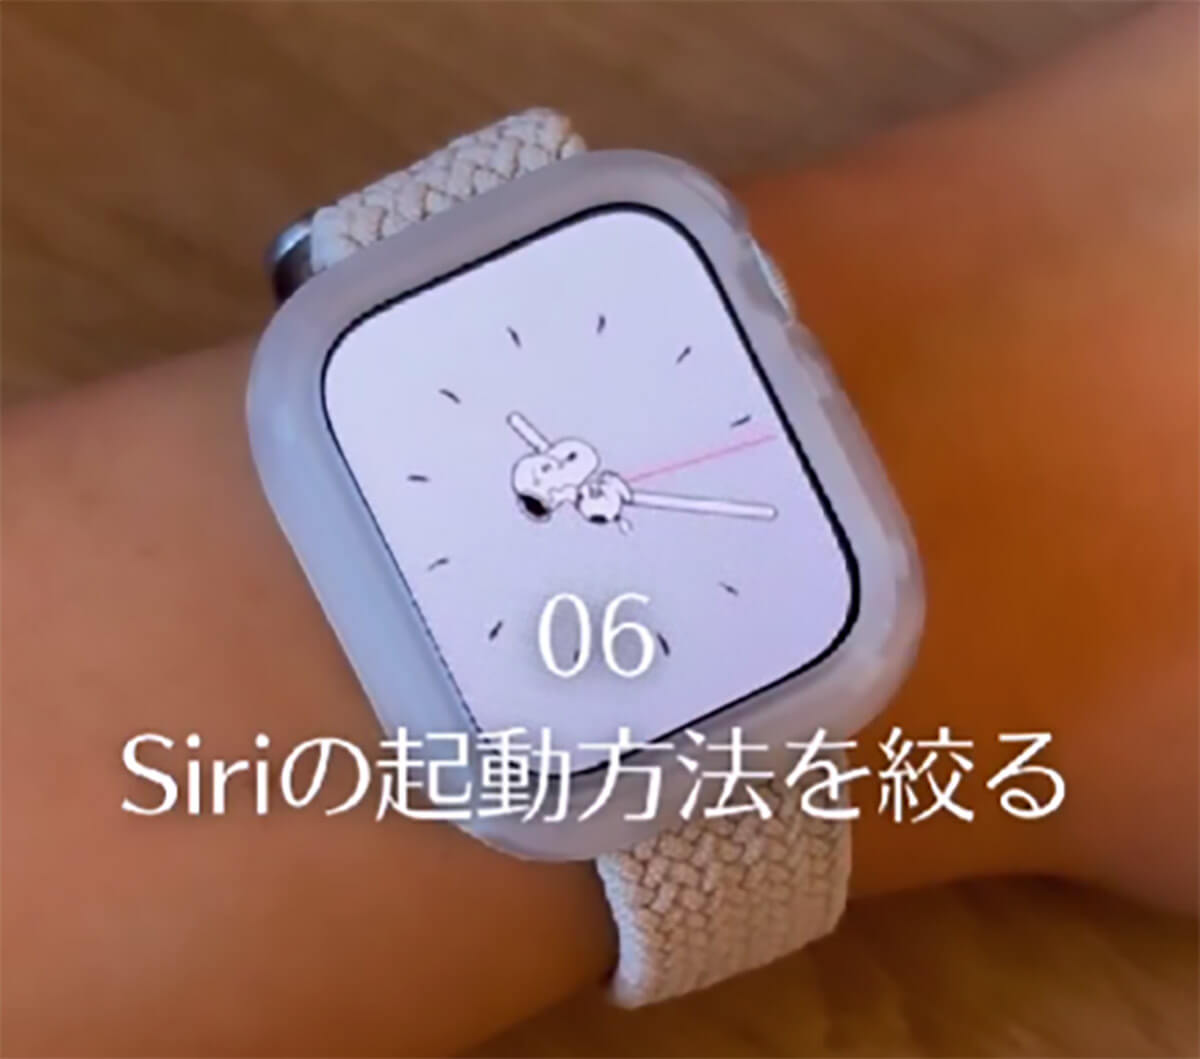 Apple Watchを購入したら、最初にやるべき設定6